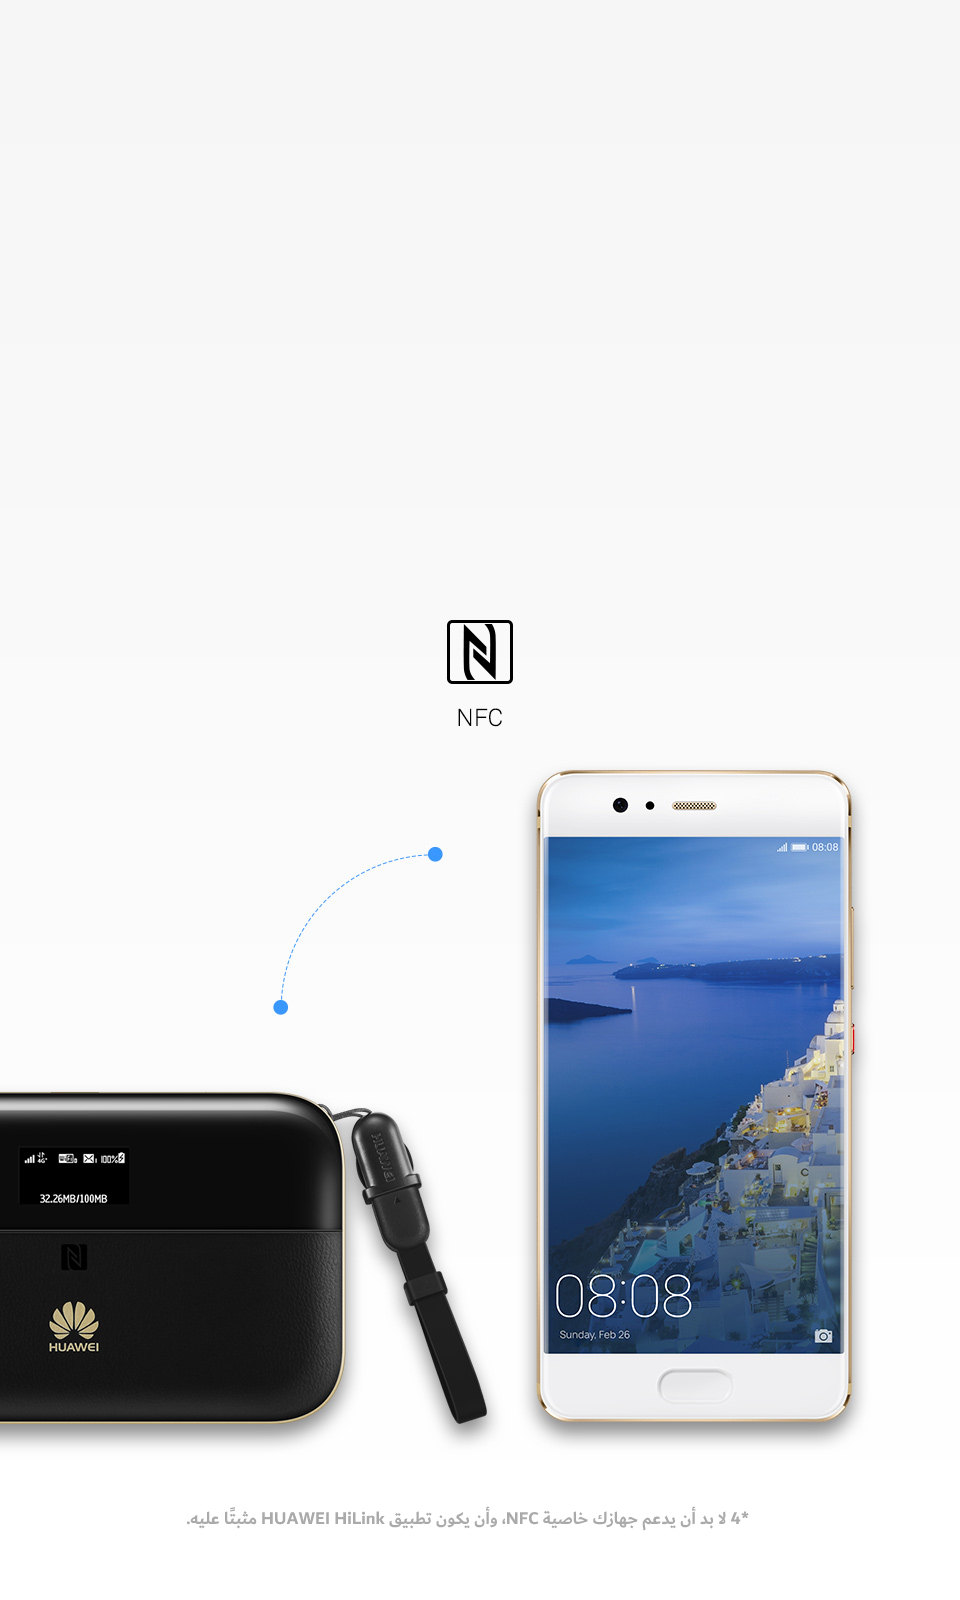 اتصال بالشبكة اللاسلكية مع تمكين خاصية NFC بلمسة واحدة فقط 